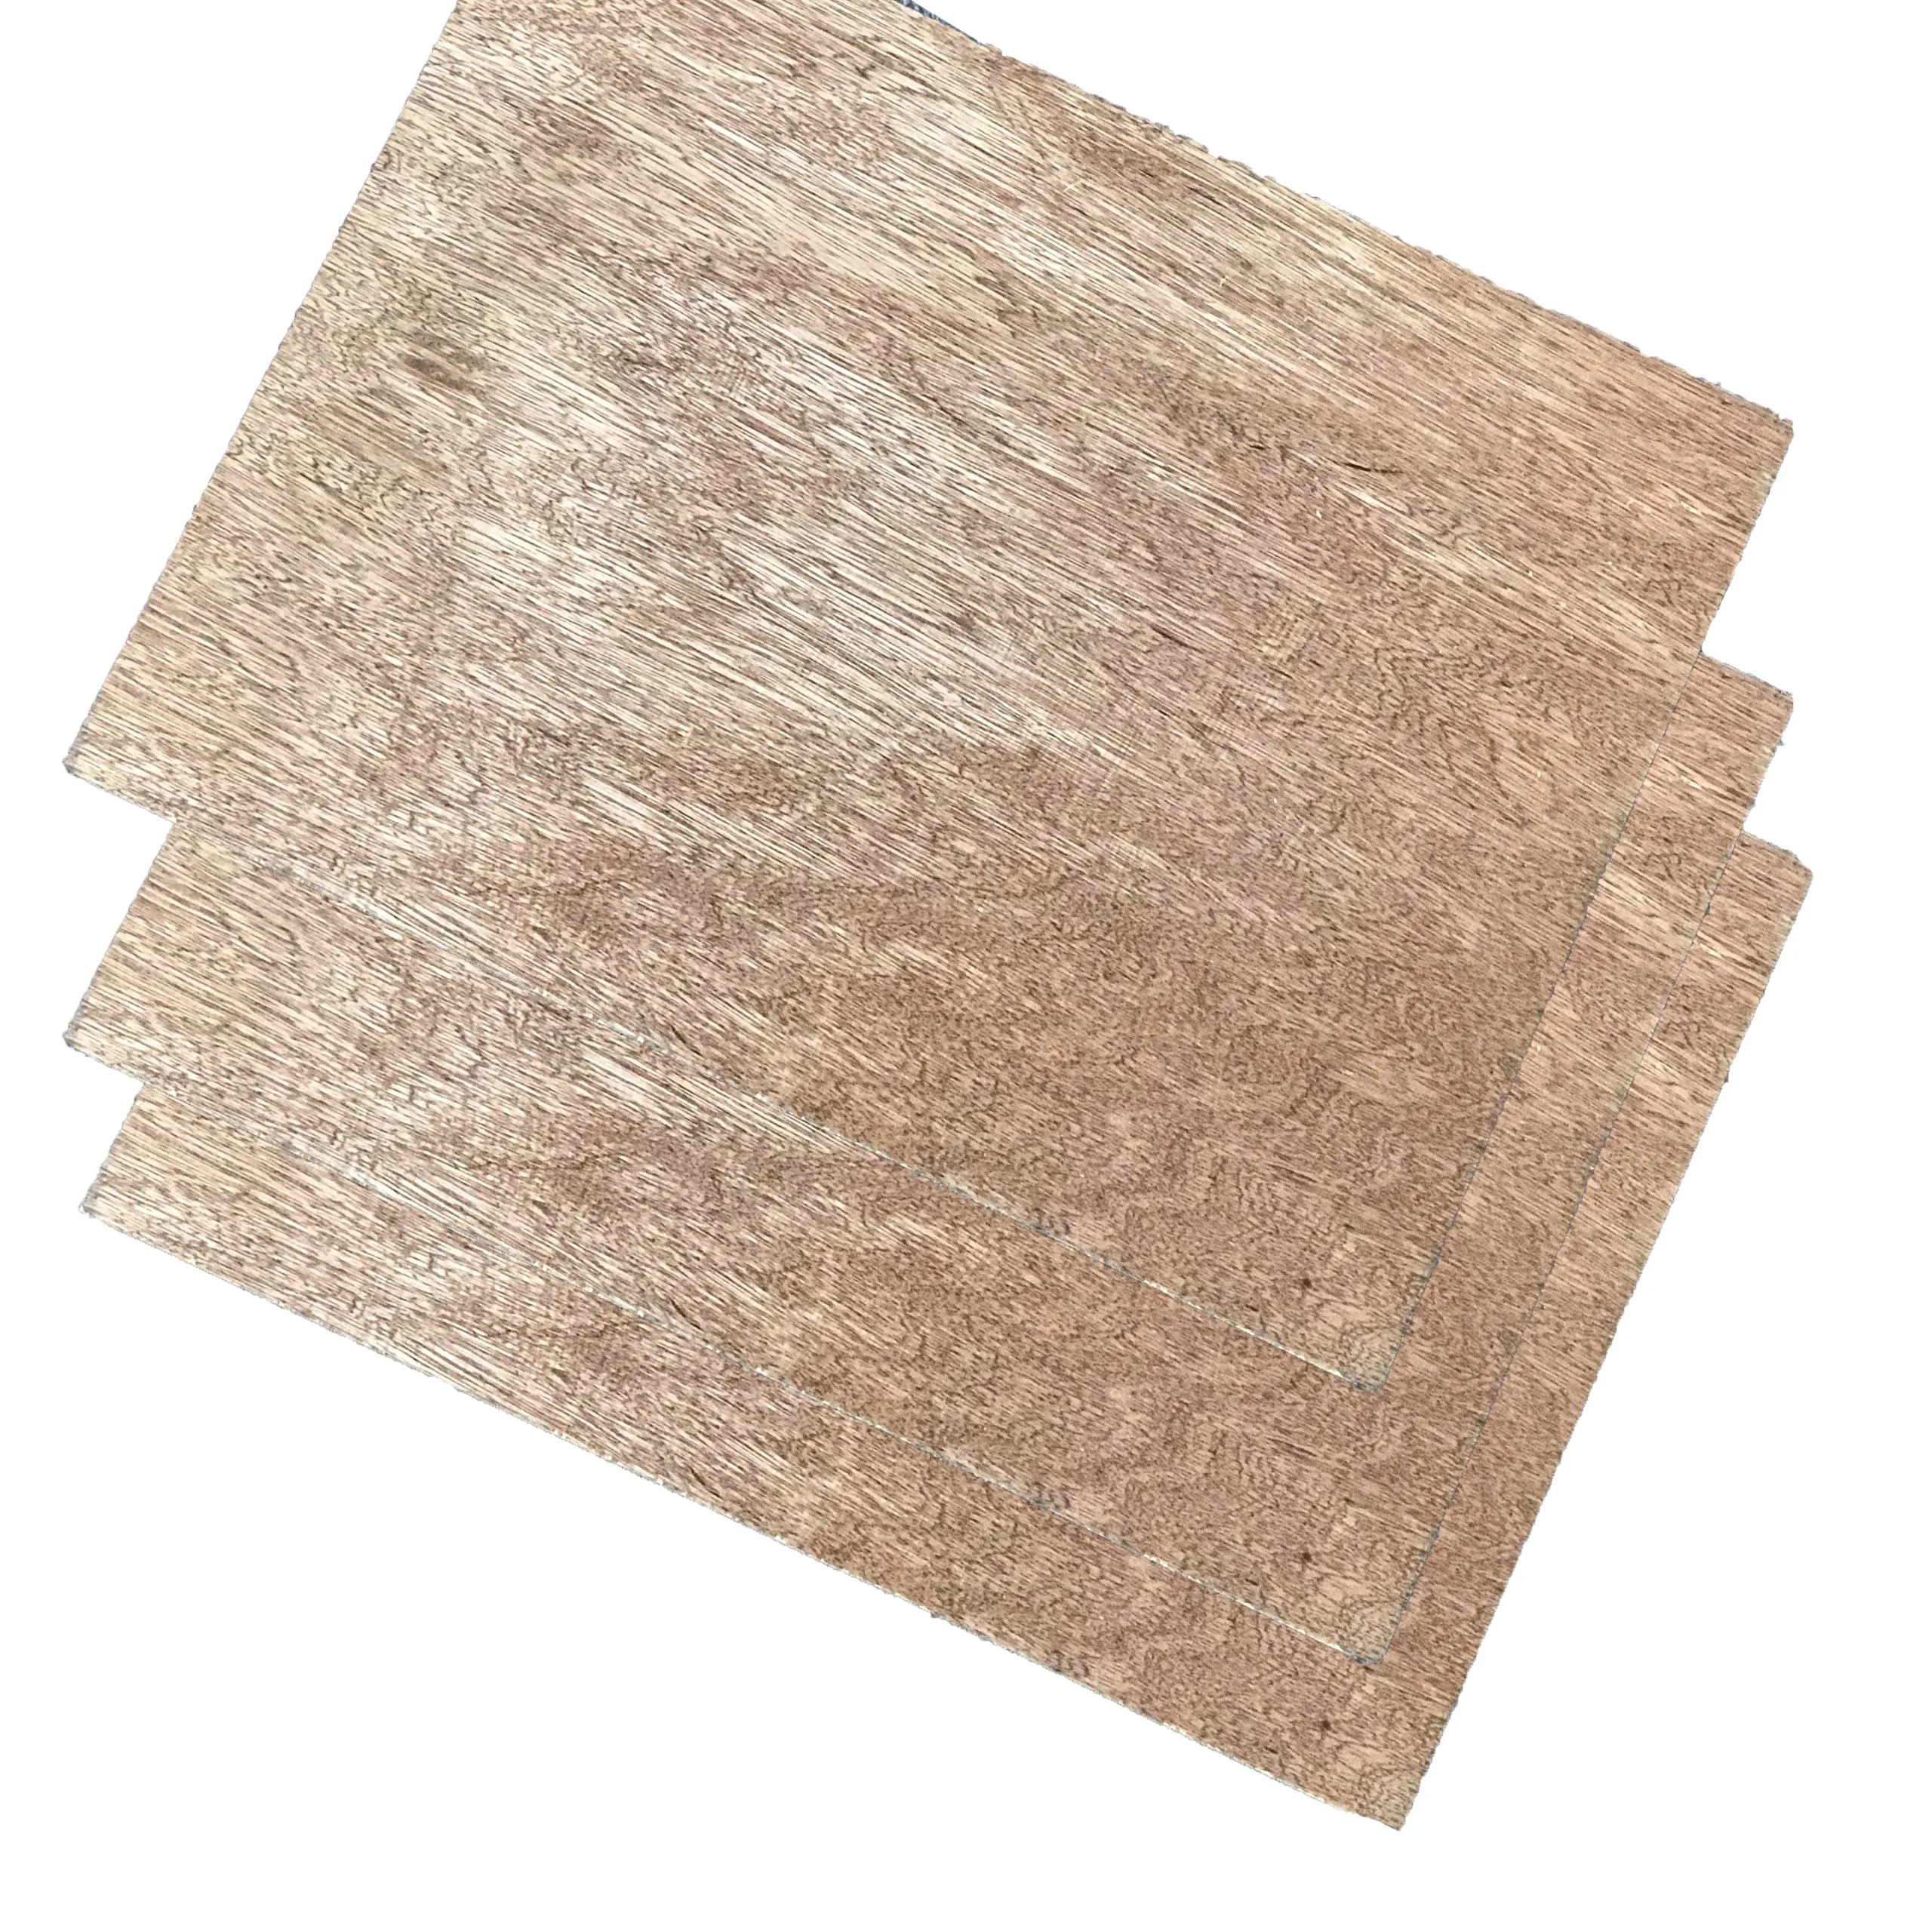 Hochwertiges Verpackungspleichtholz günstiger Preis Größe 1220 x 2440 umweltfreundliches Sperrholz Herstellung von Innen- und Bauprodukten